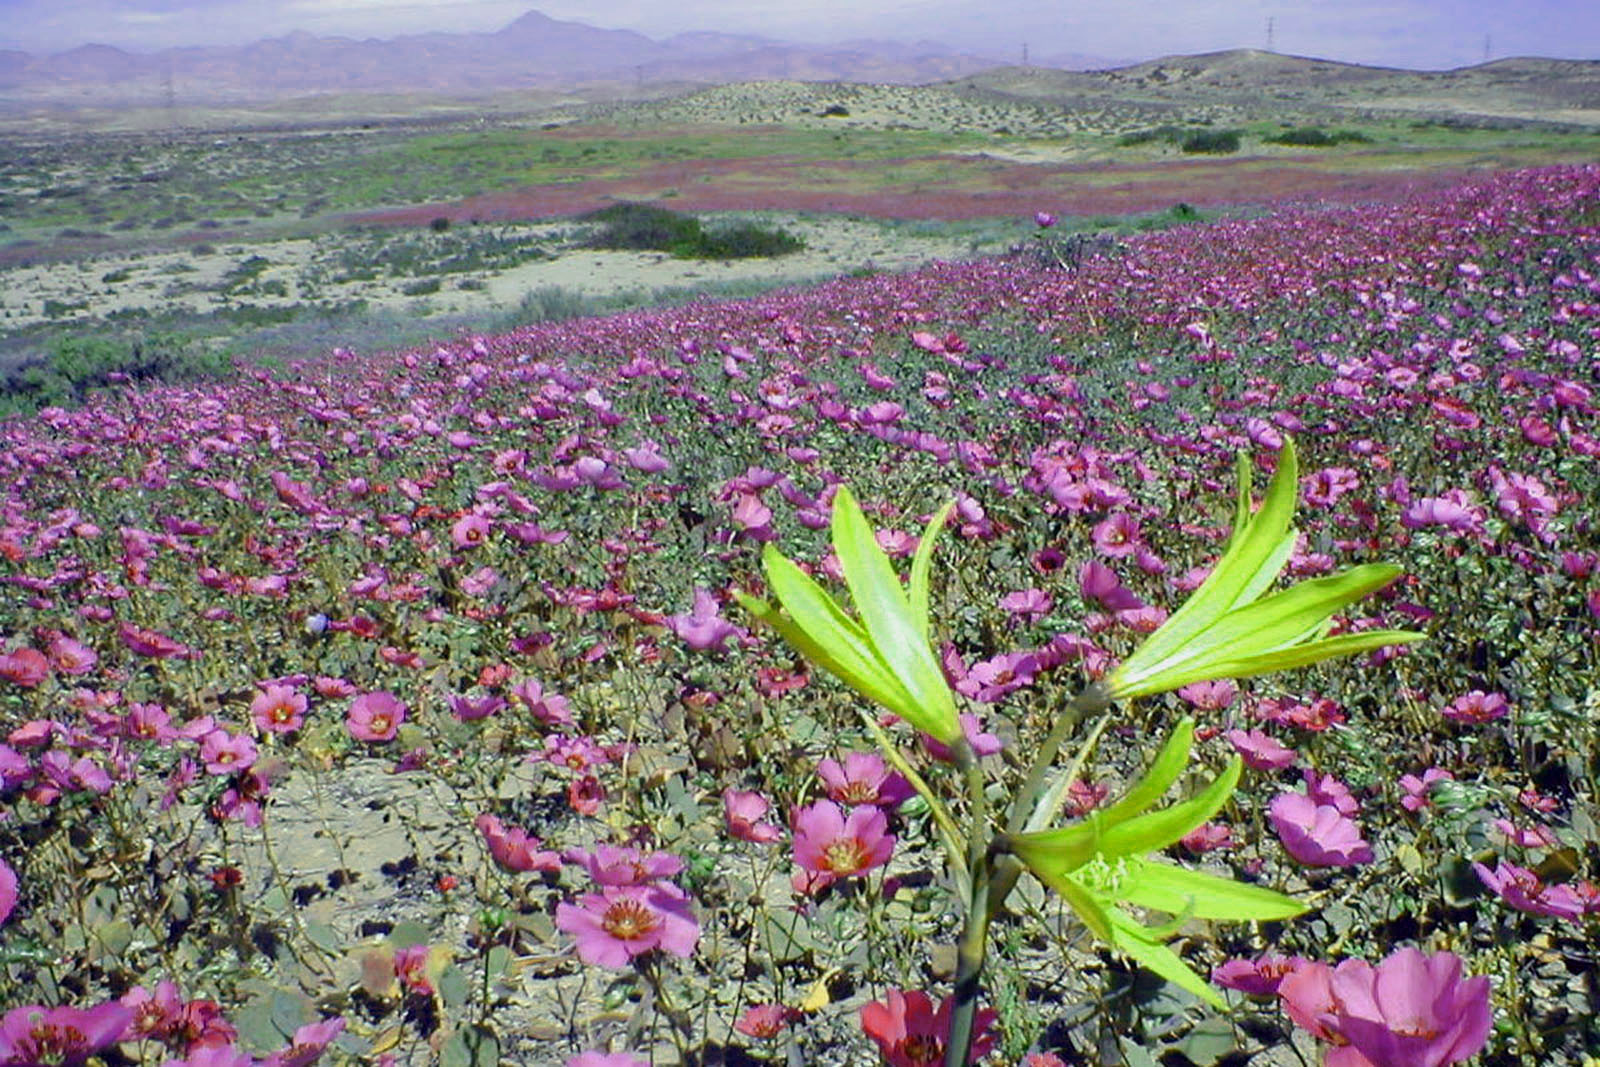 desierto-de-atacama-florido-wikipedia-org.jpg 